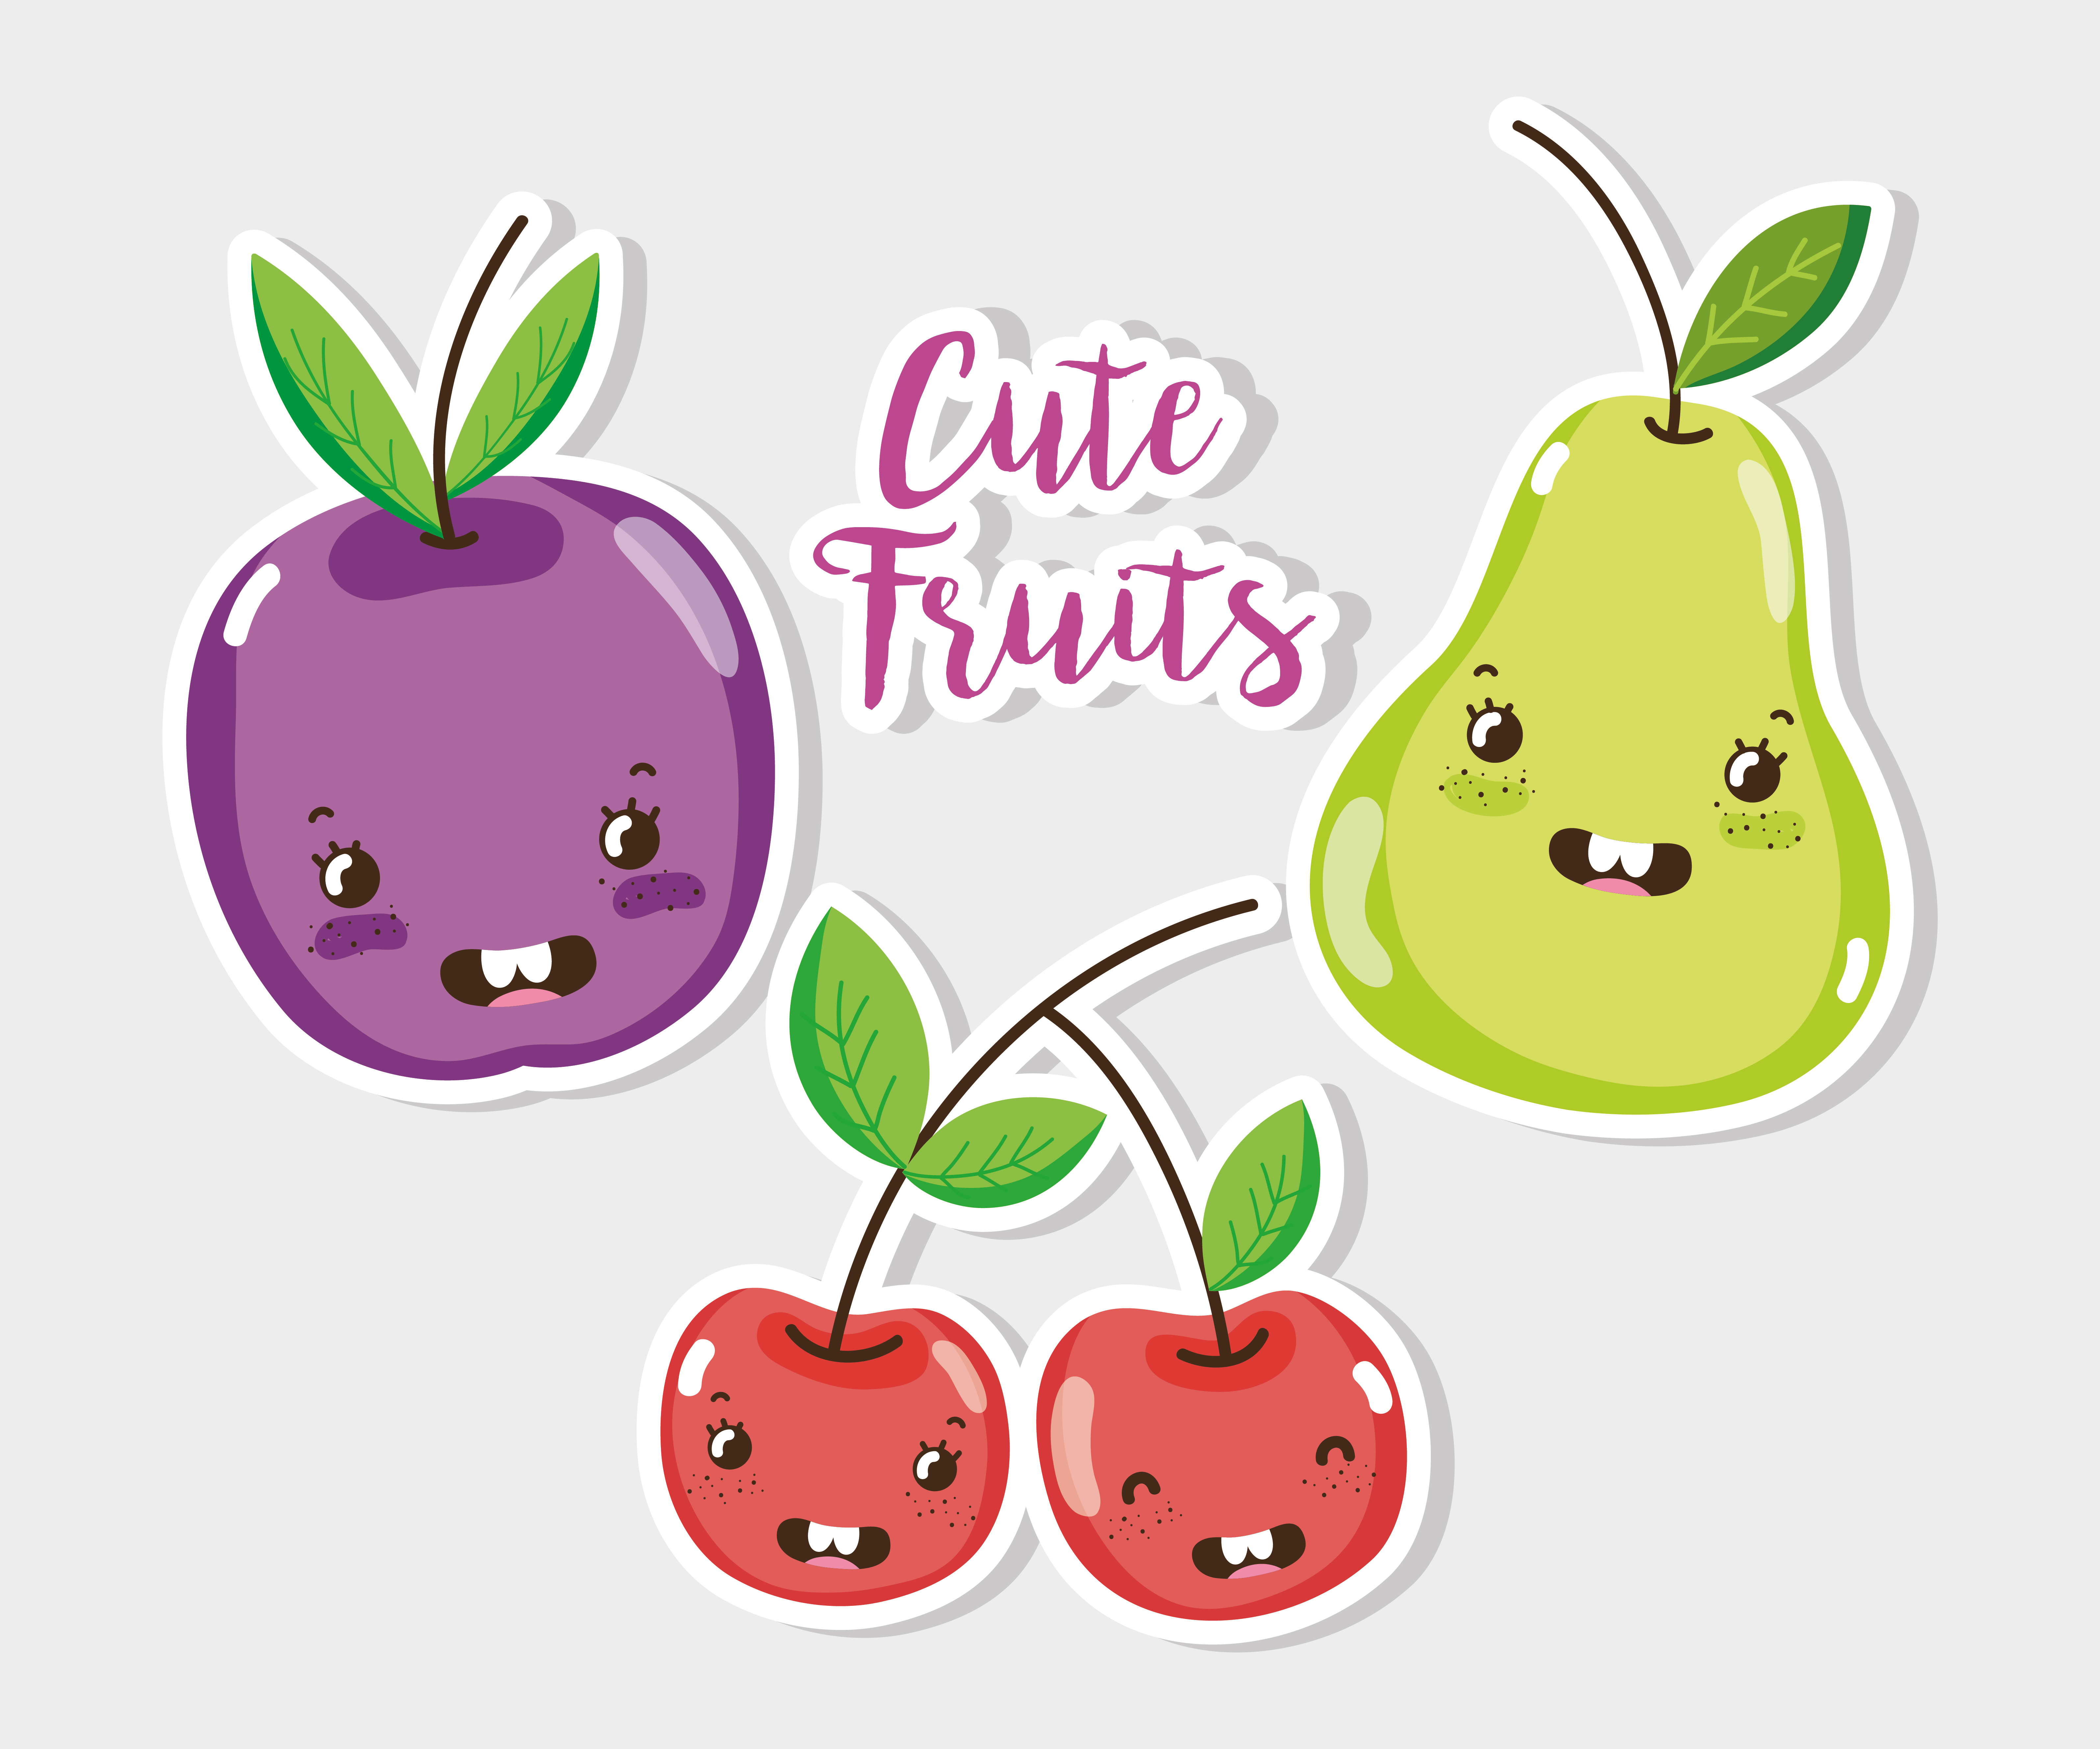 Cute fruits  cartoons  Download Free Vectors Clipart 